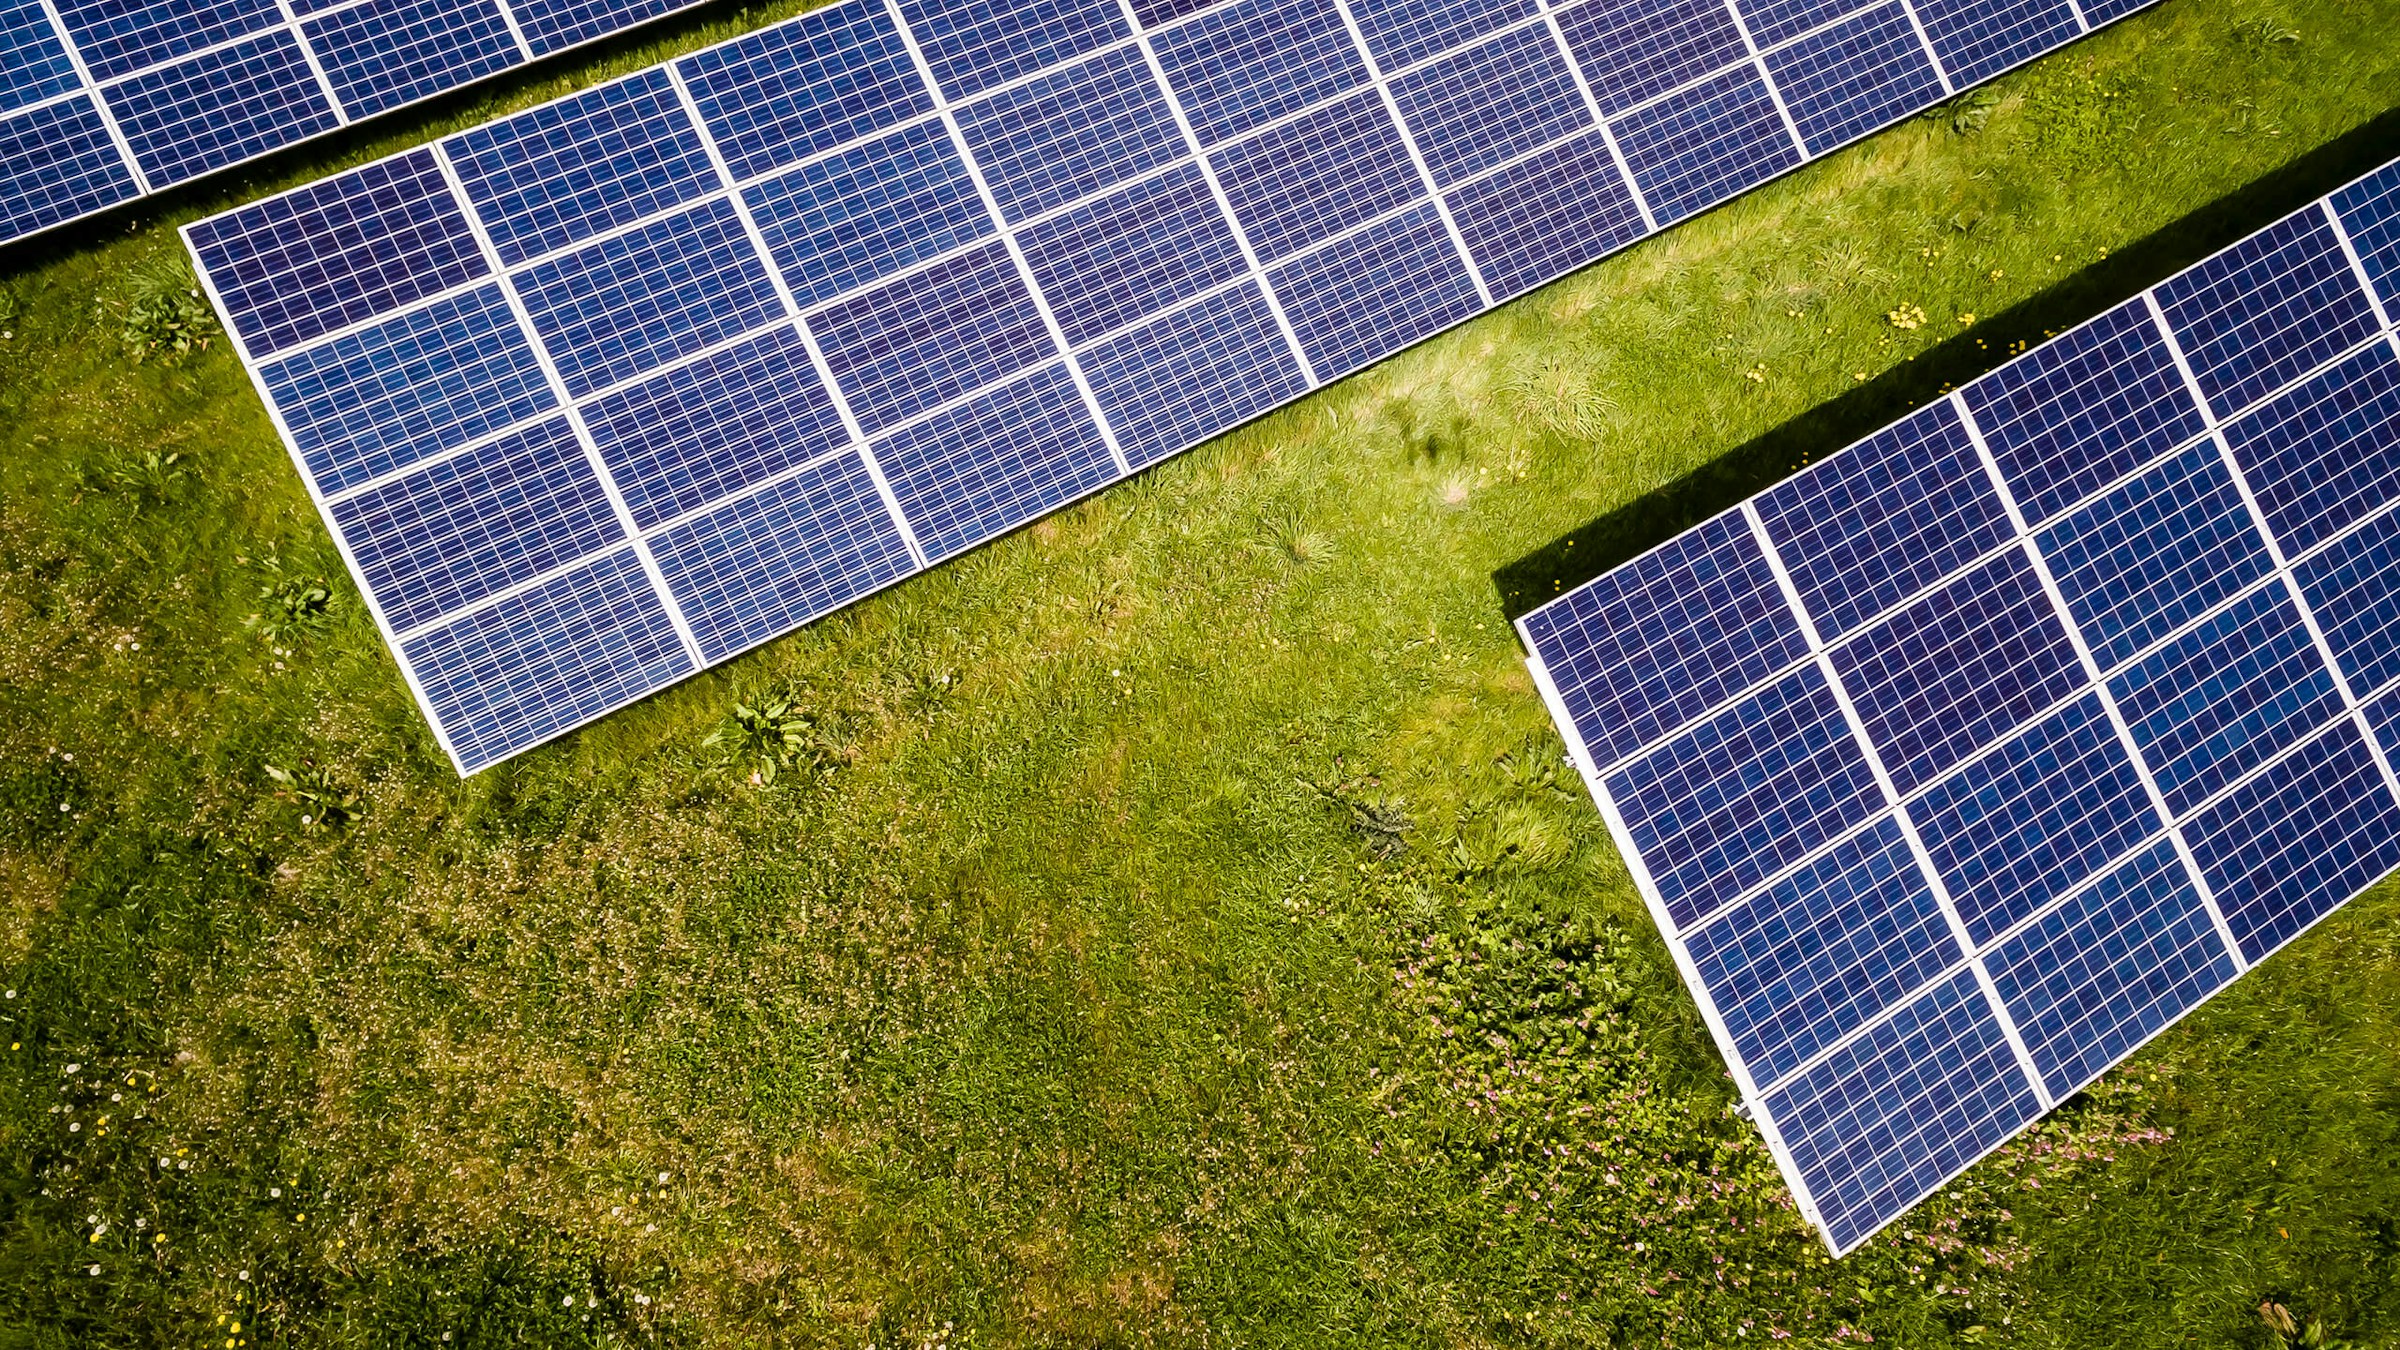 Solarpaneele auf grünem Rasen